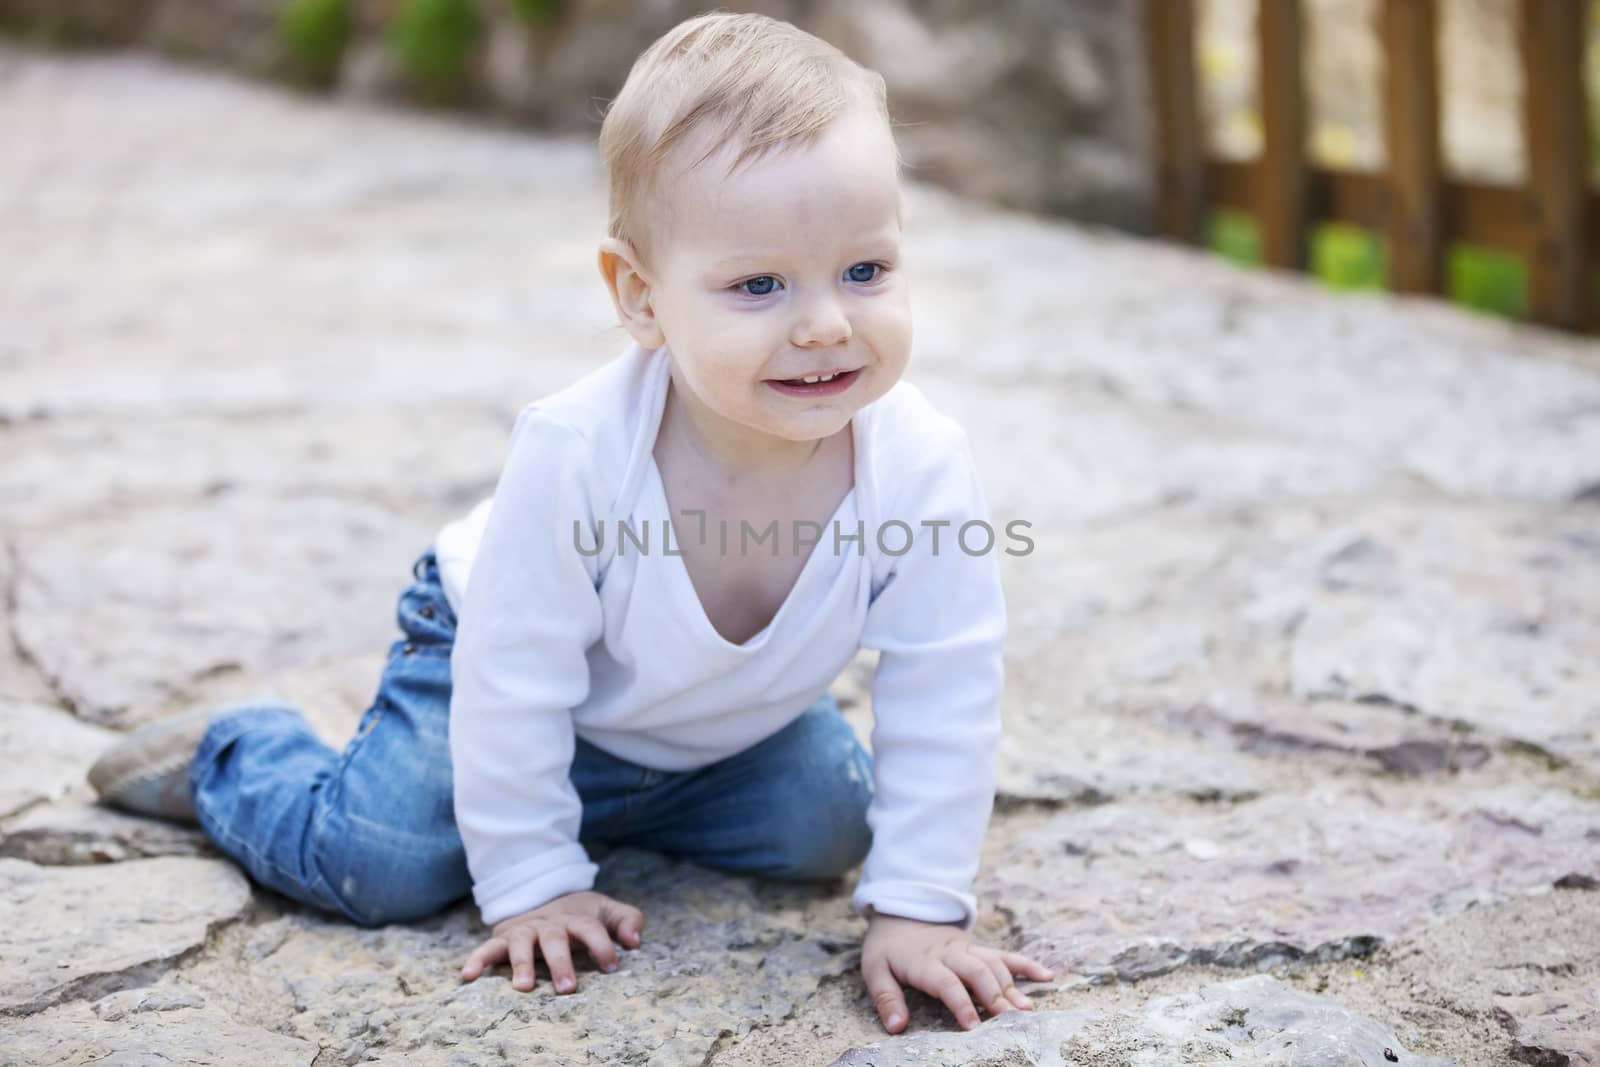 Cute little boy crawling on stone paved sidewalk by photobac